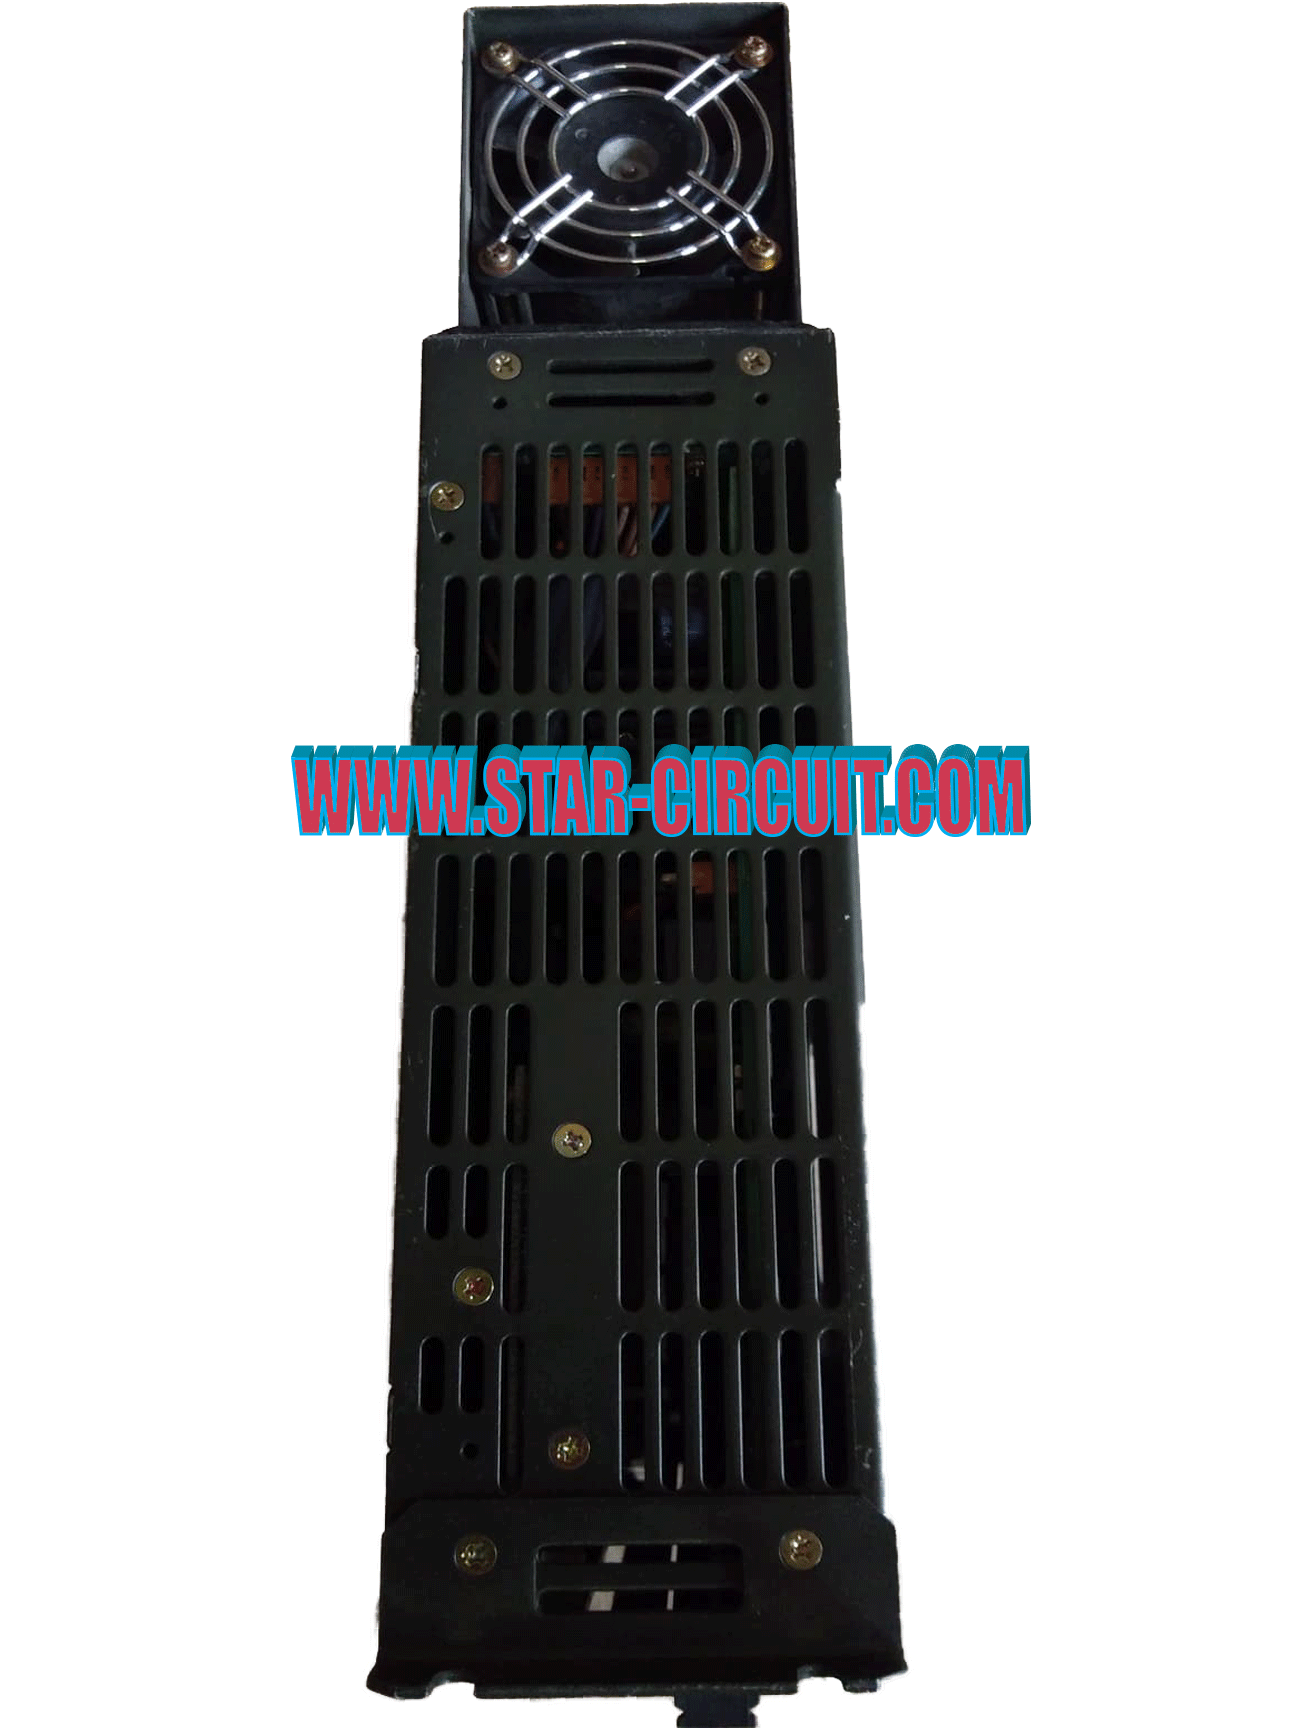 SANYO DENKI SERV AMPLIFIER-MODEL: PY0A050A1G3MP01